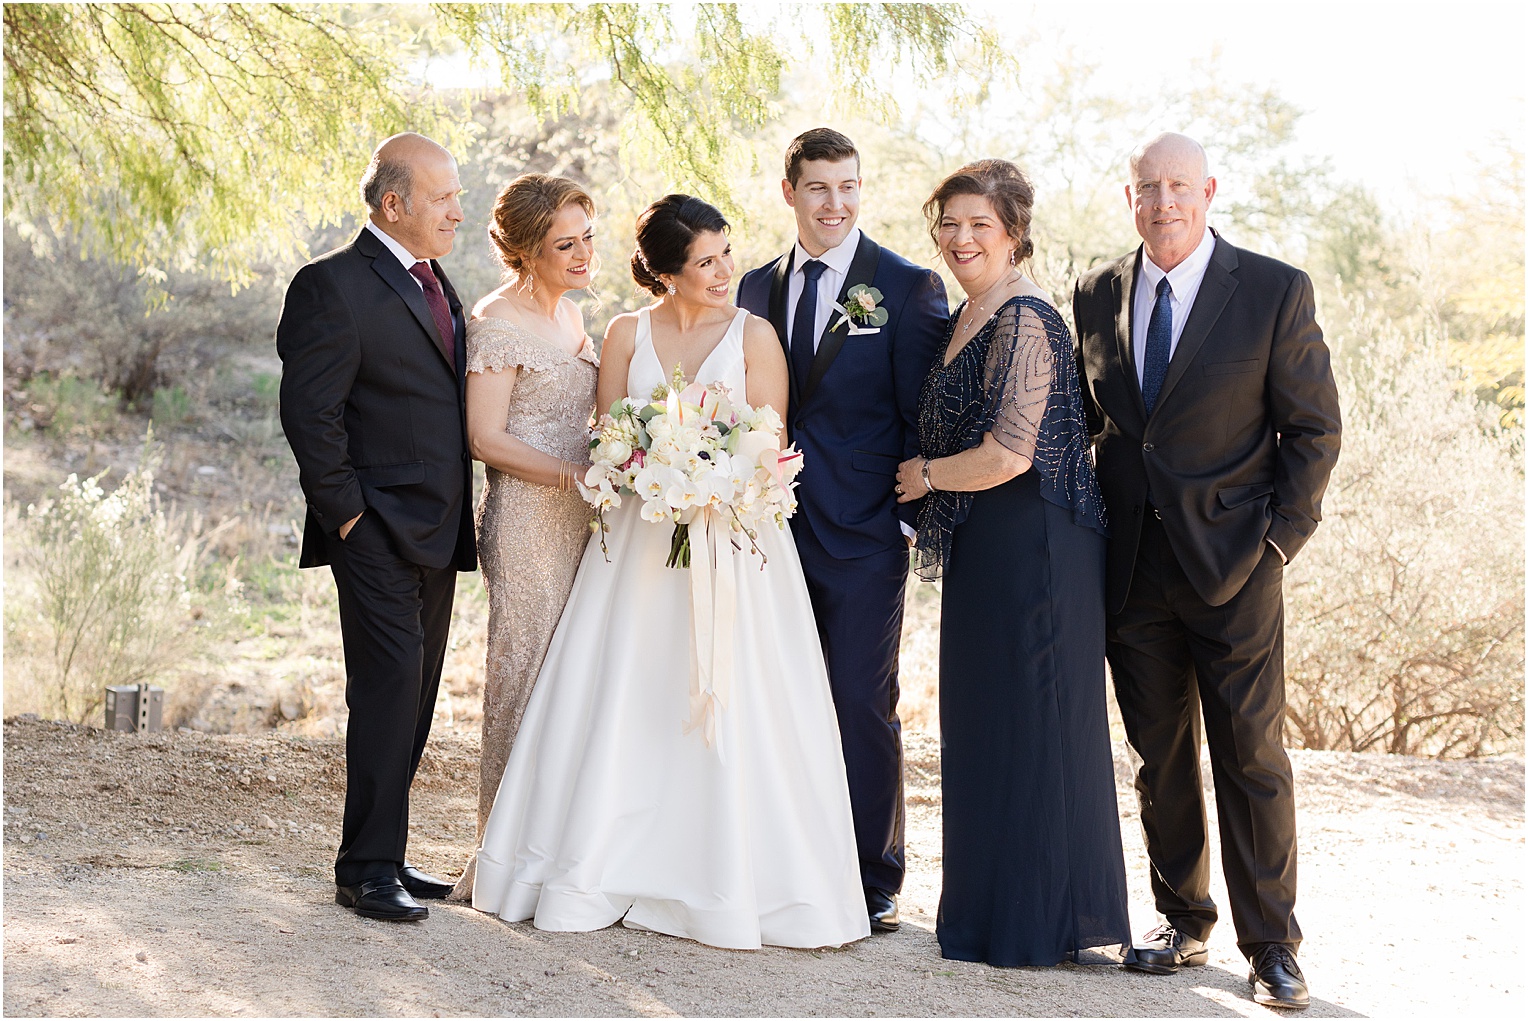 Saguaro Buttes Wedding Tucson, Arizona Farnaz & Brian family wedding photos